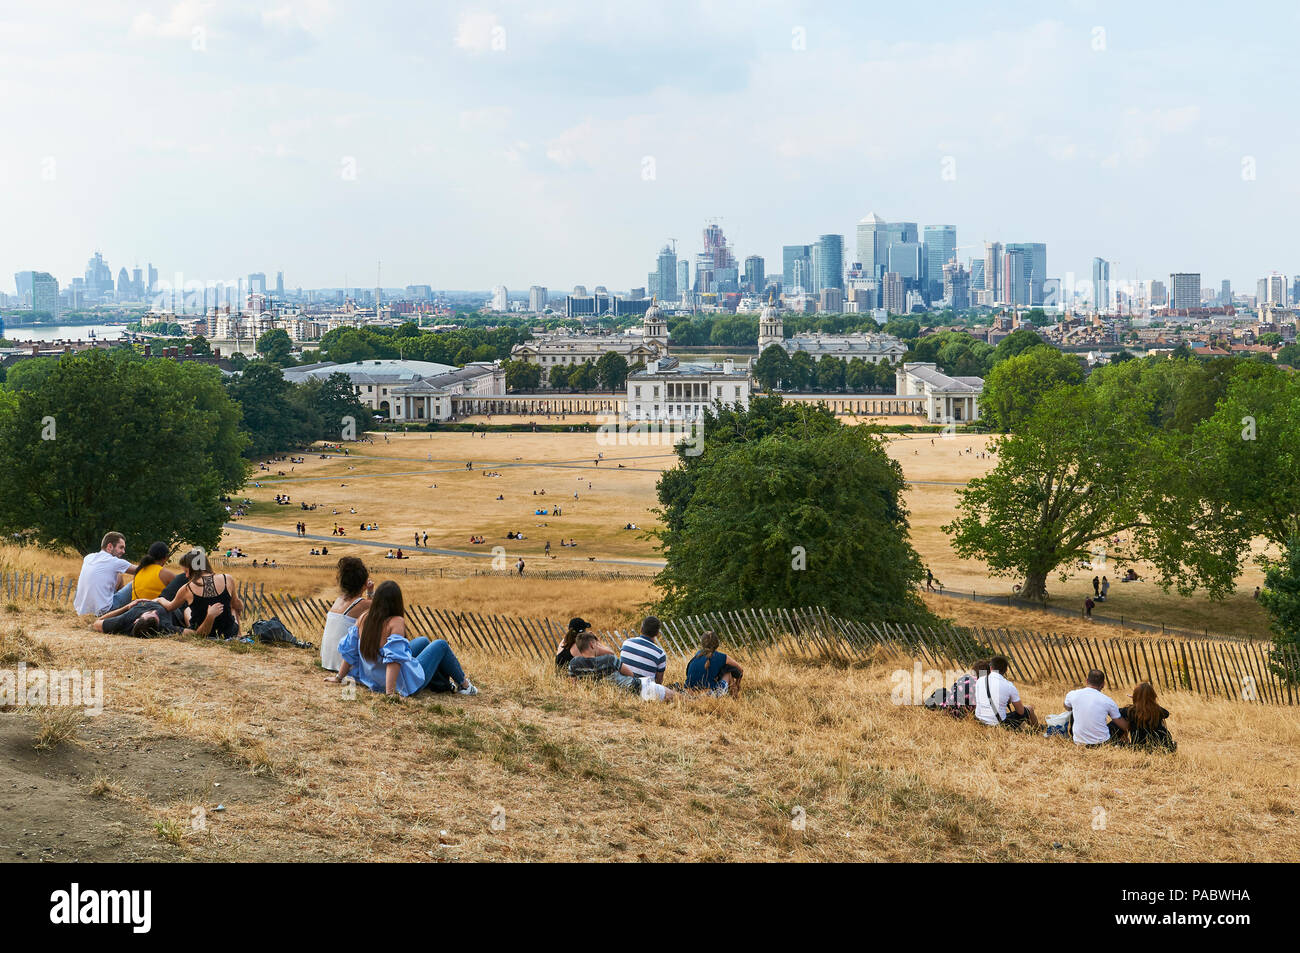 Les touristes sur la colline dans le parc de Greenwich, London UK, surplombant la ville, au cours de la canicule de 2018 Banque D'Images